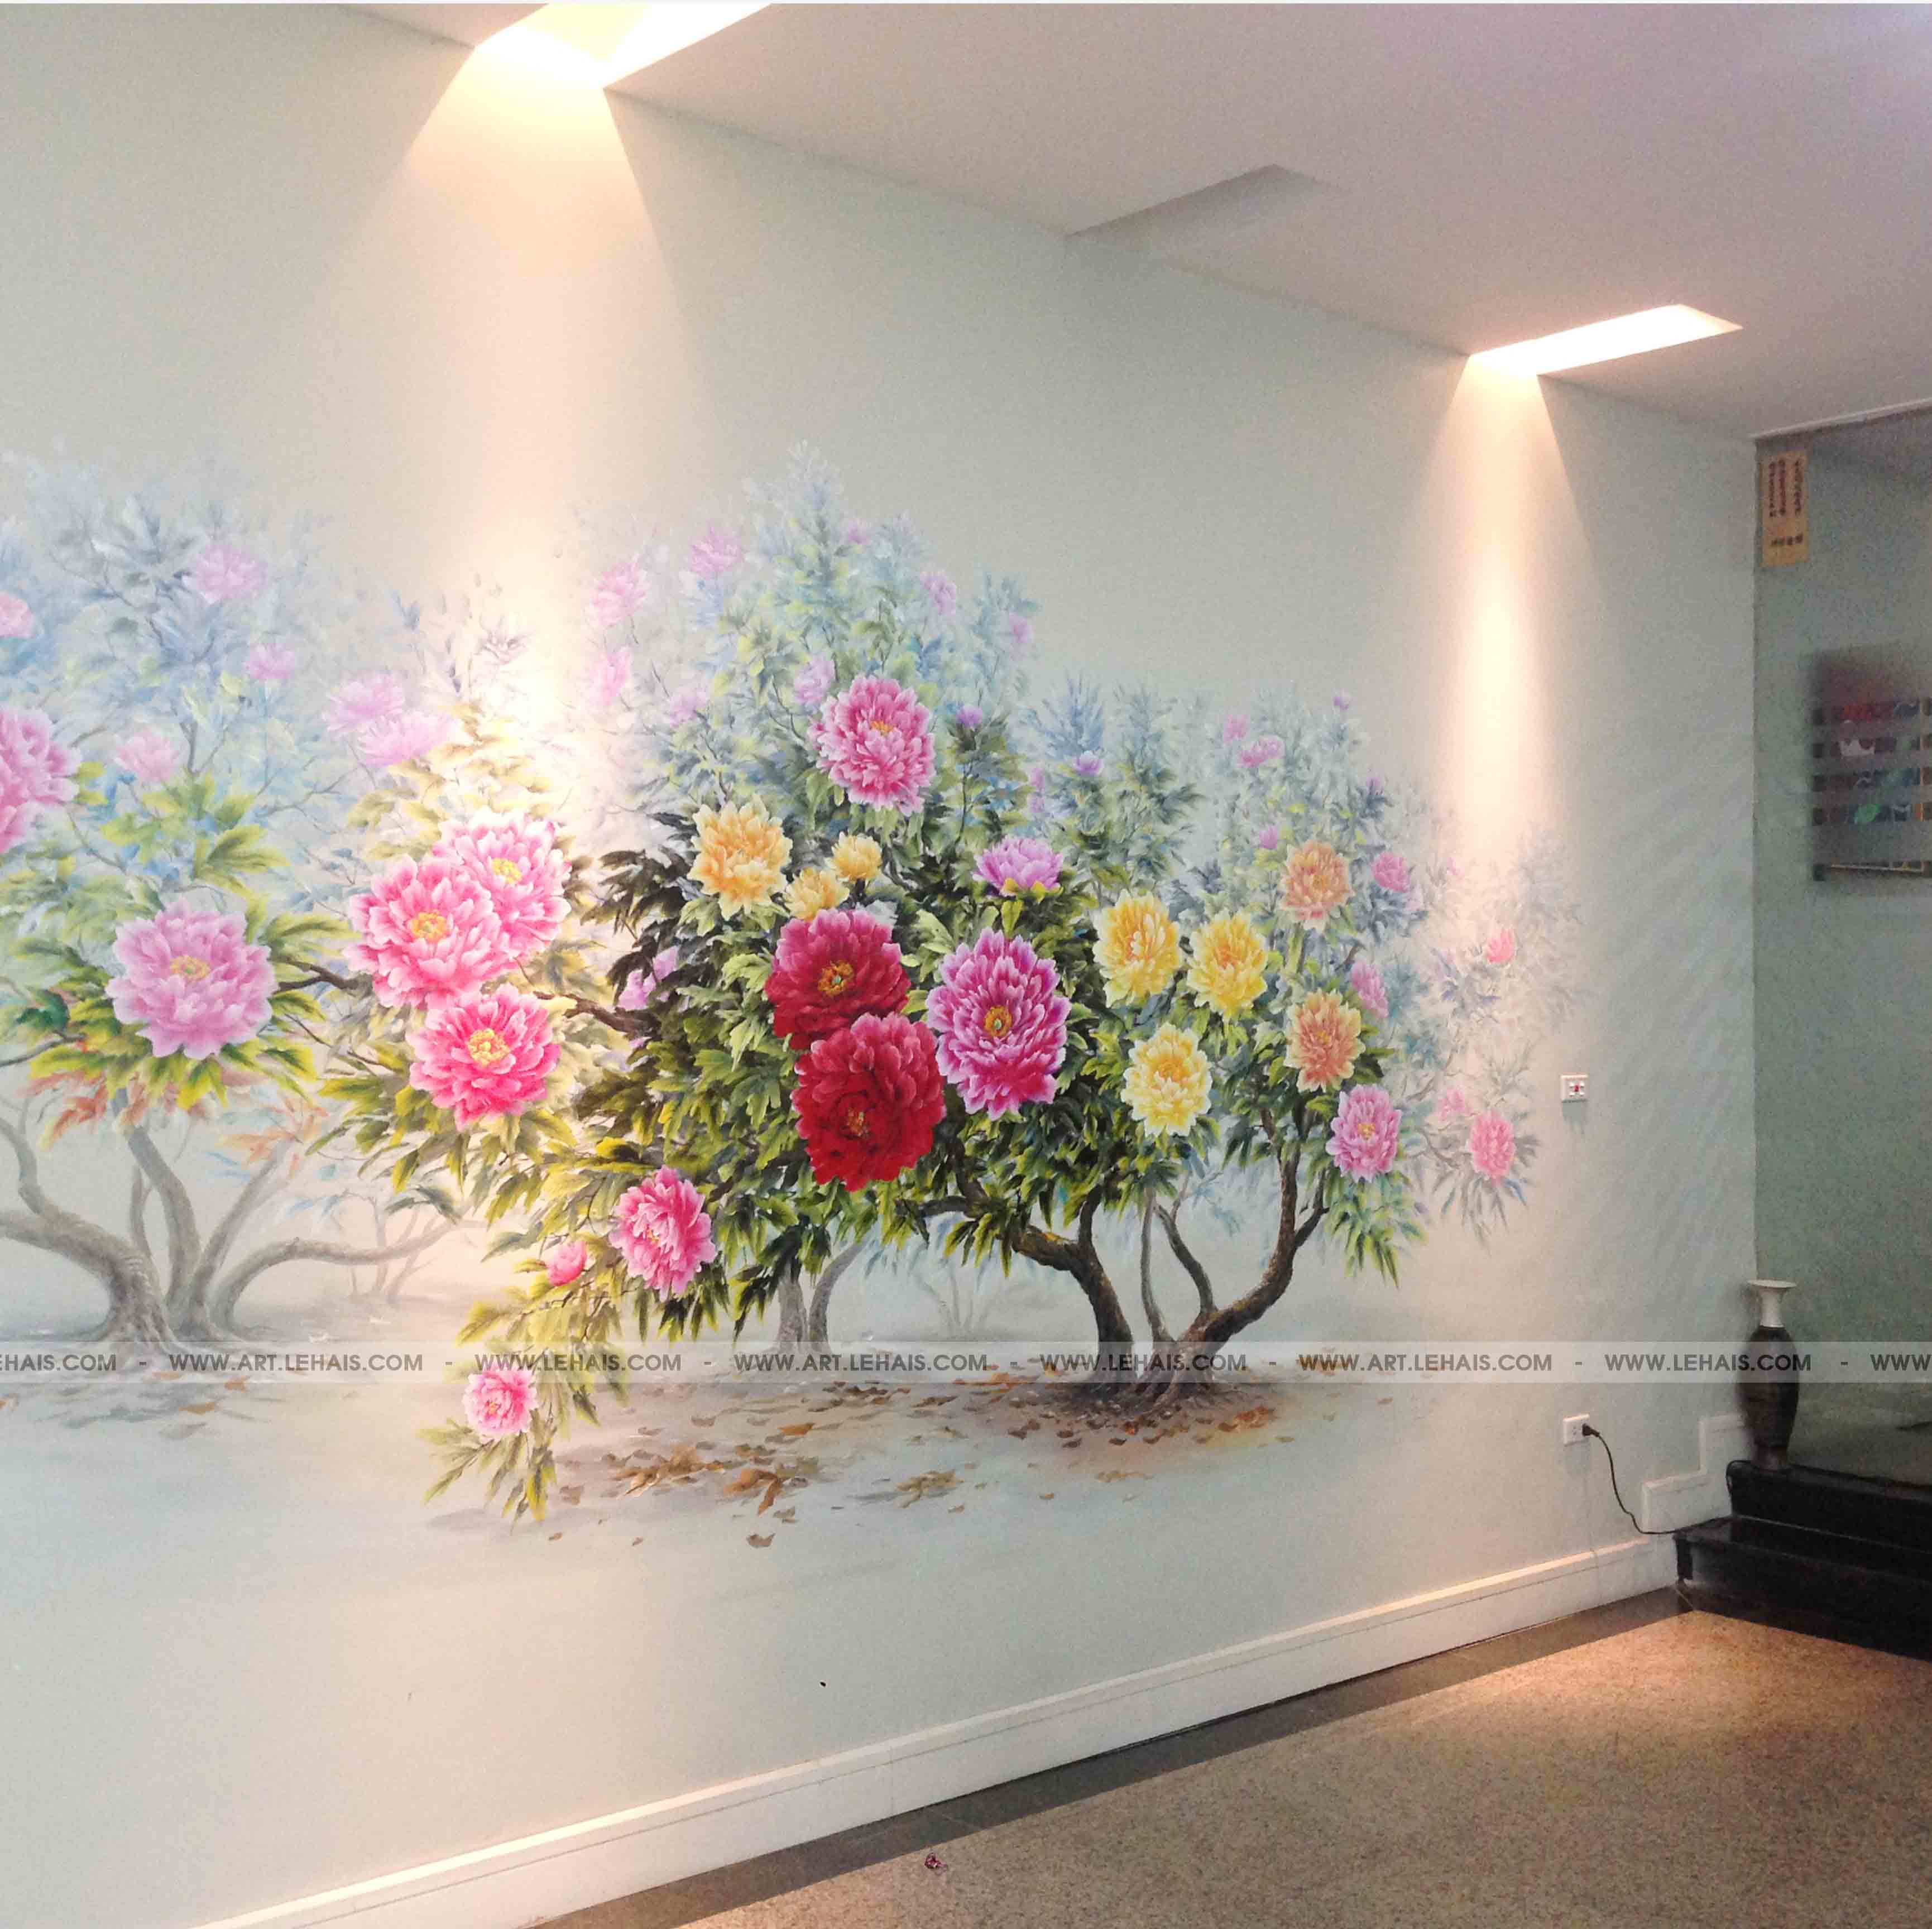 Bức tranh tường 3D về hoa mẫu đơn sẽ khiến gian phòng của bạn trở nên sinh động và đẹp mắt. Bức tranh này được tạo nên trong KĐT Mỹ Đình và sẽ là món đồ trang trí hoàn hảo cho bất cứ ai yêu nghệ thuật và sự độc đáo.